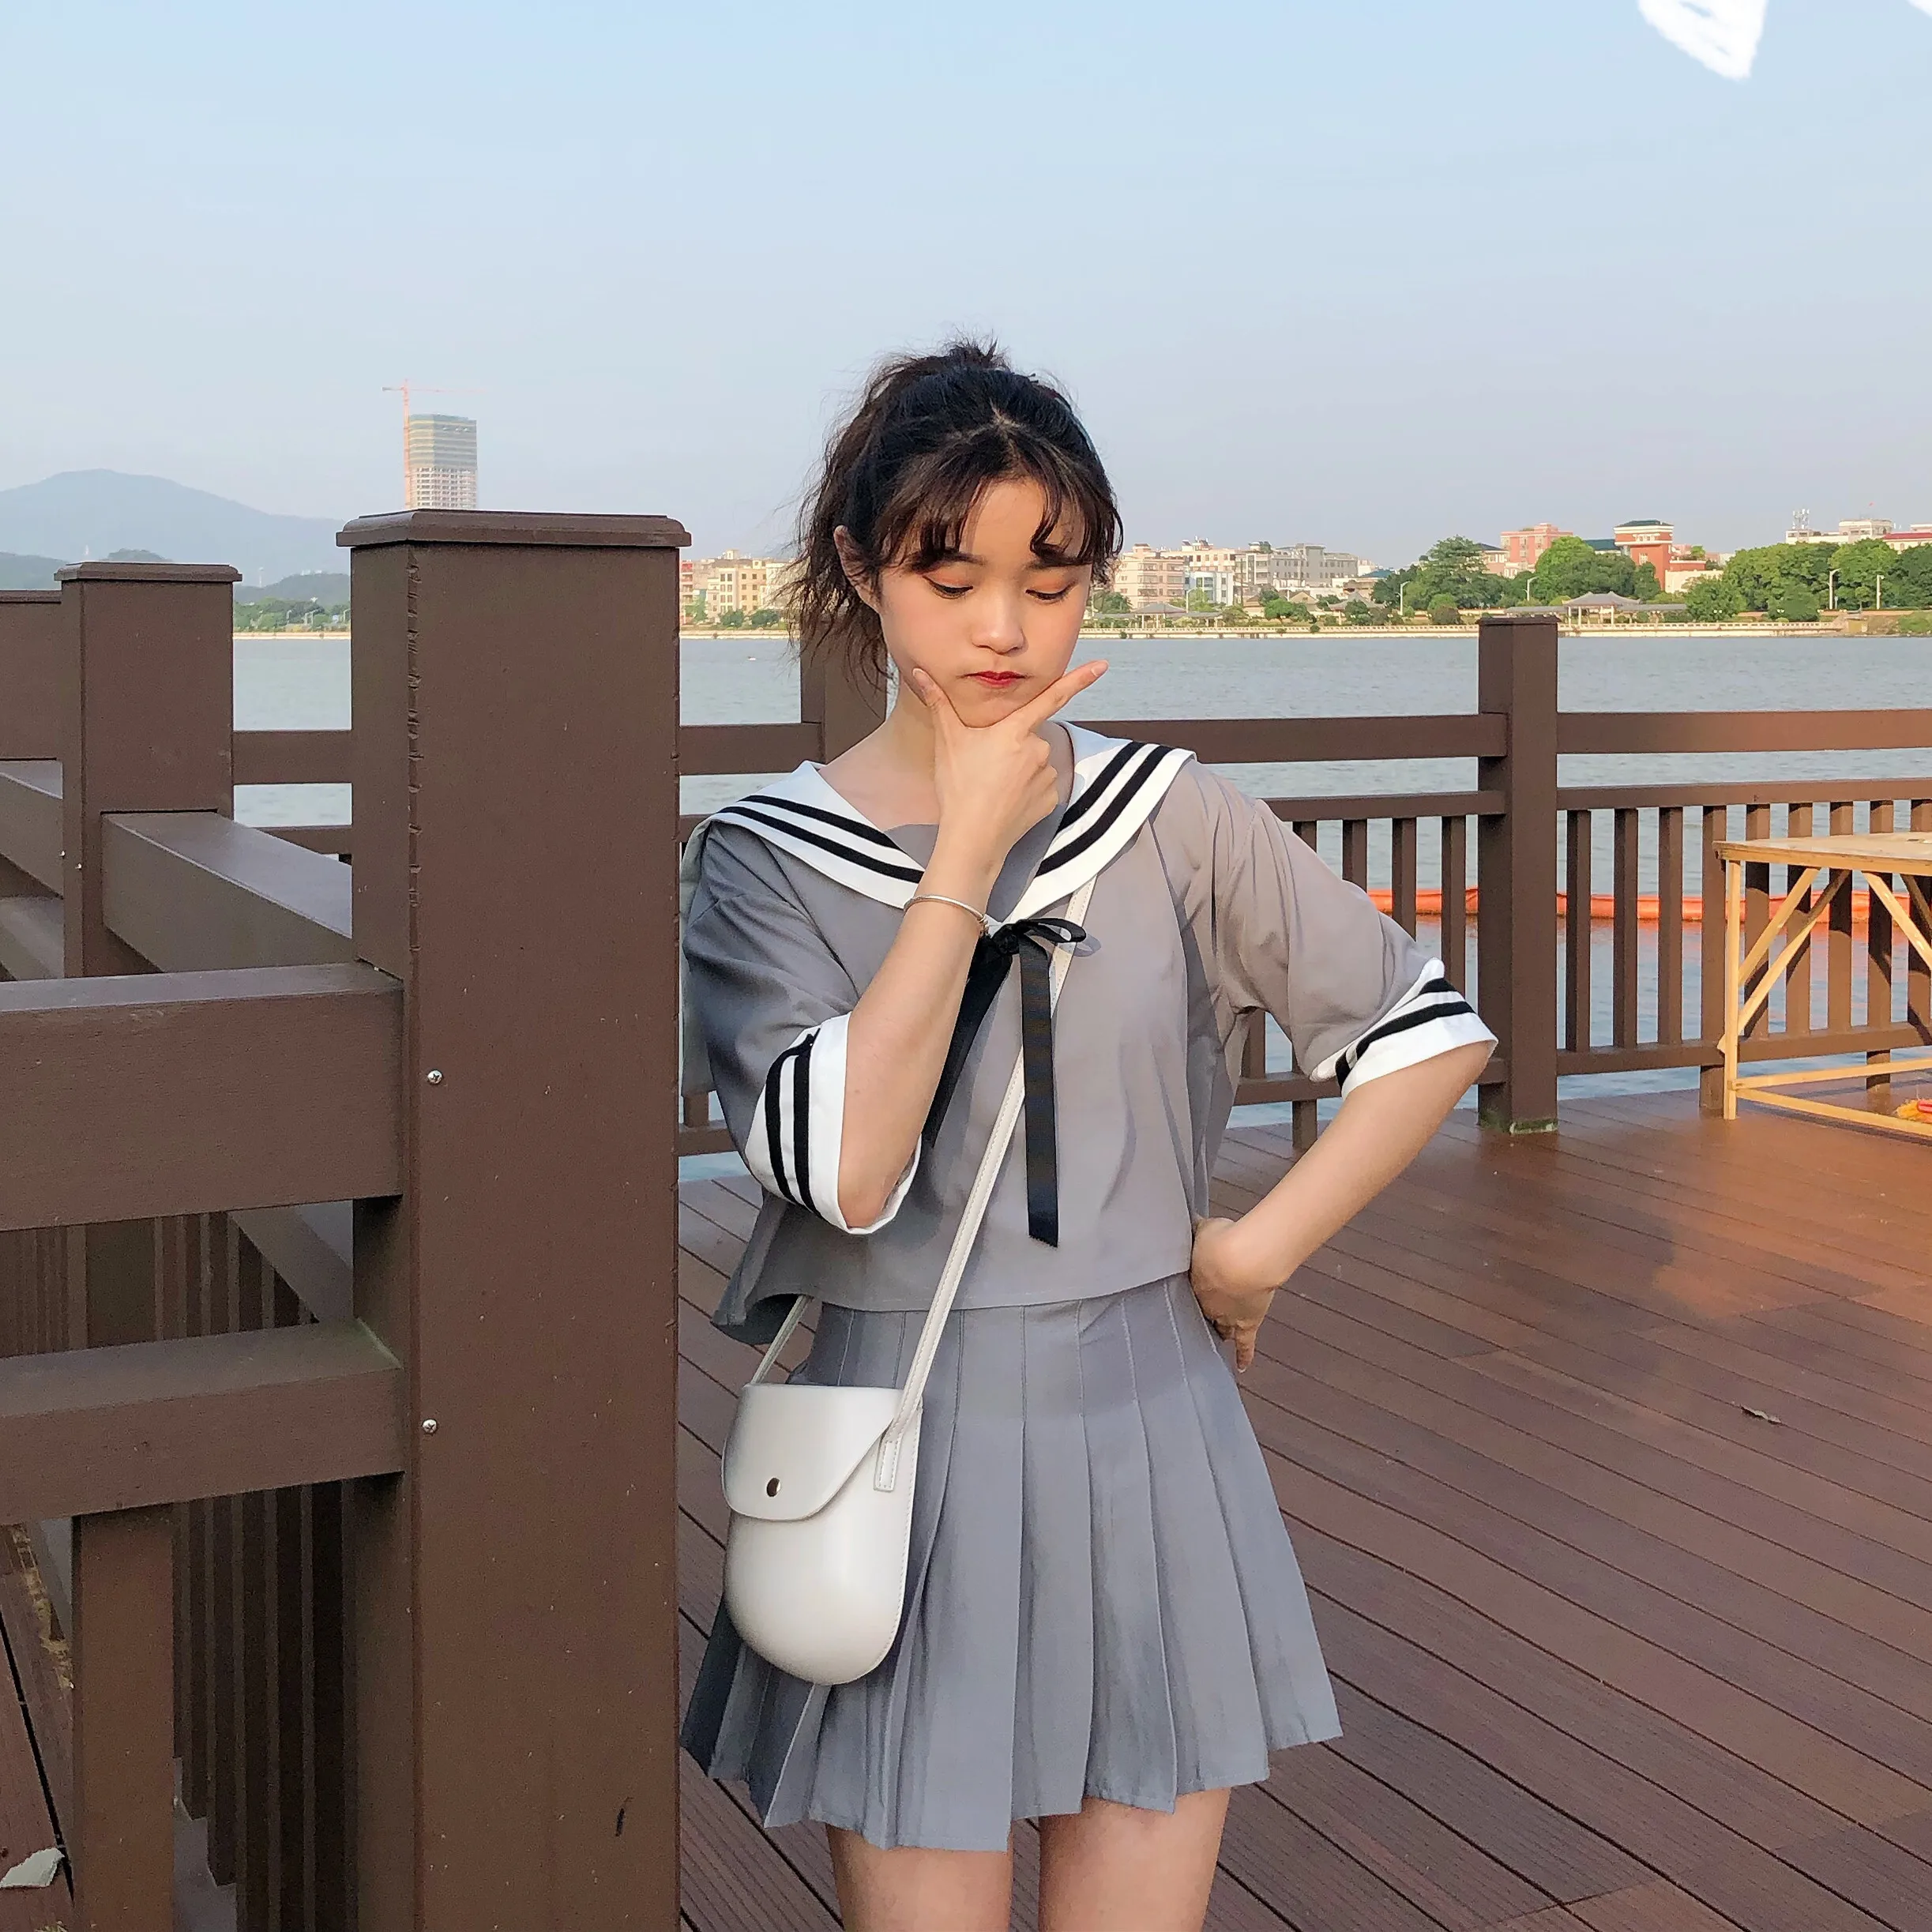 Матросское платье высокого класса JK японская школьная форма сладкий матросский воротник рубашка и юбка с бантом Бабочка вышивка